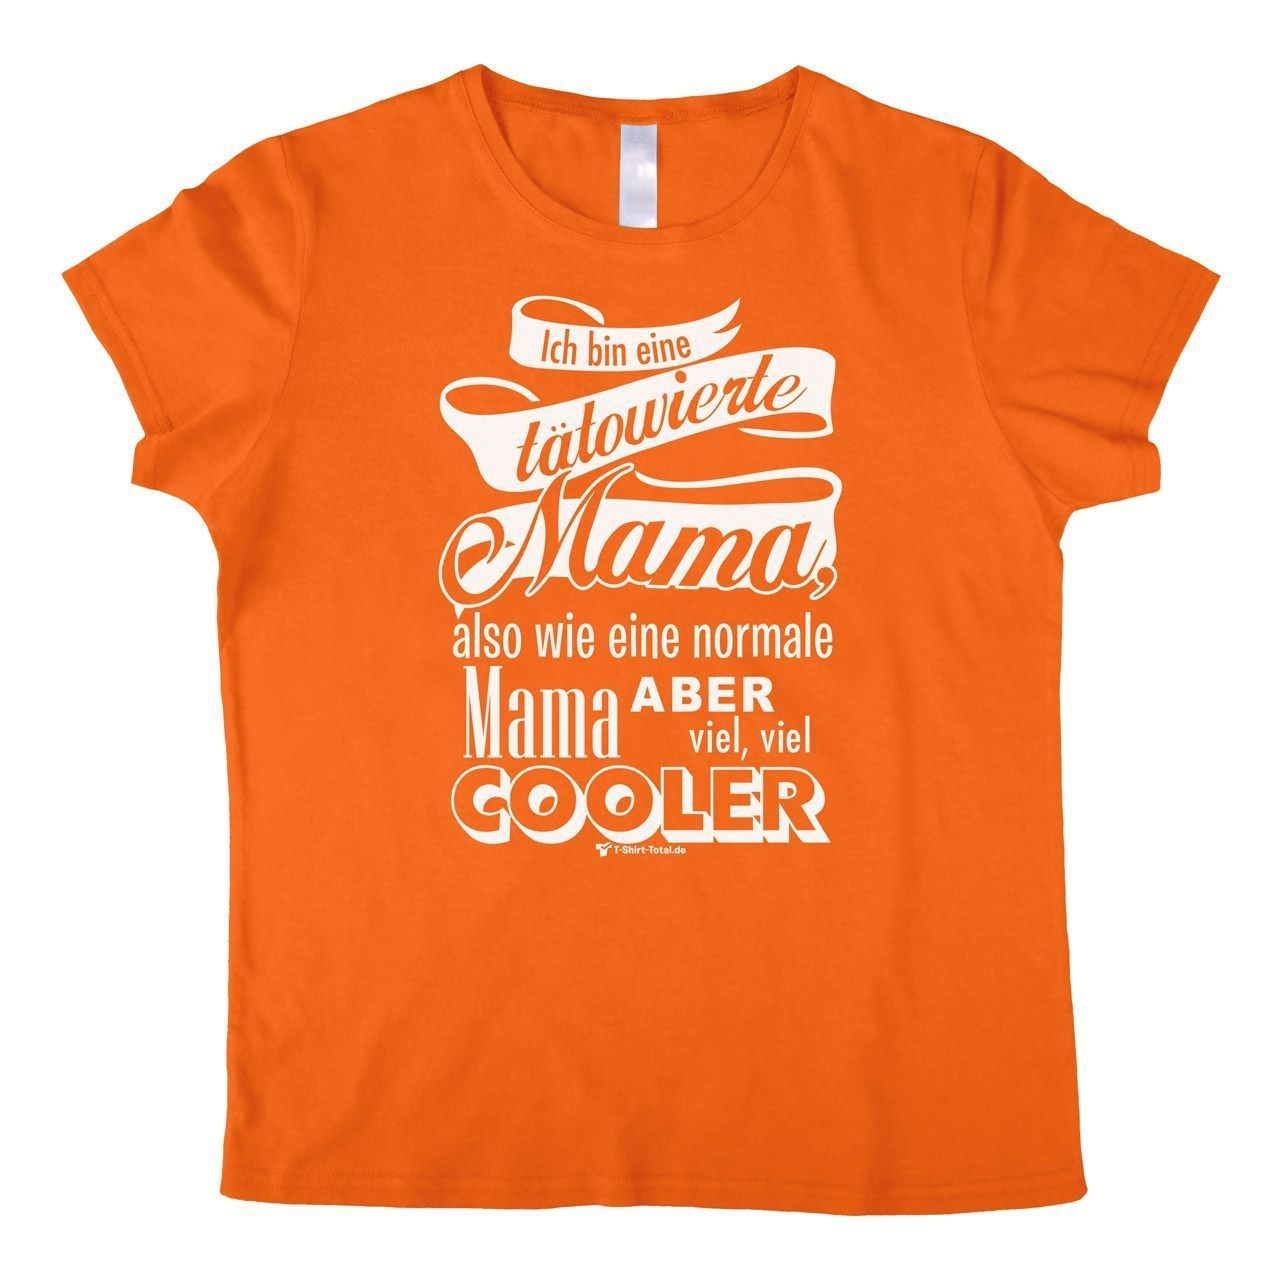 Tätowierte Mama Woman T-Shirt orange Small